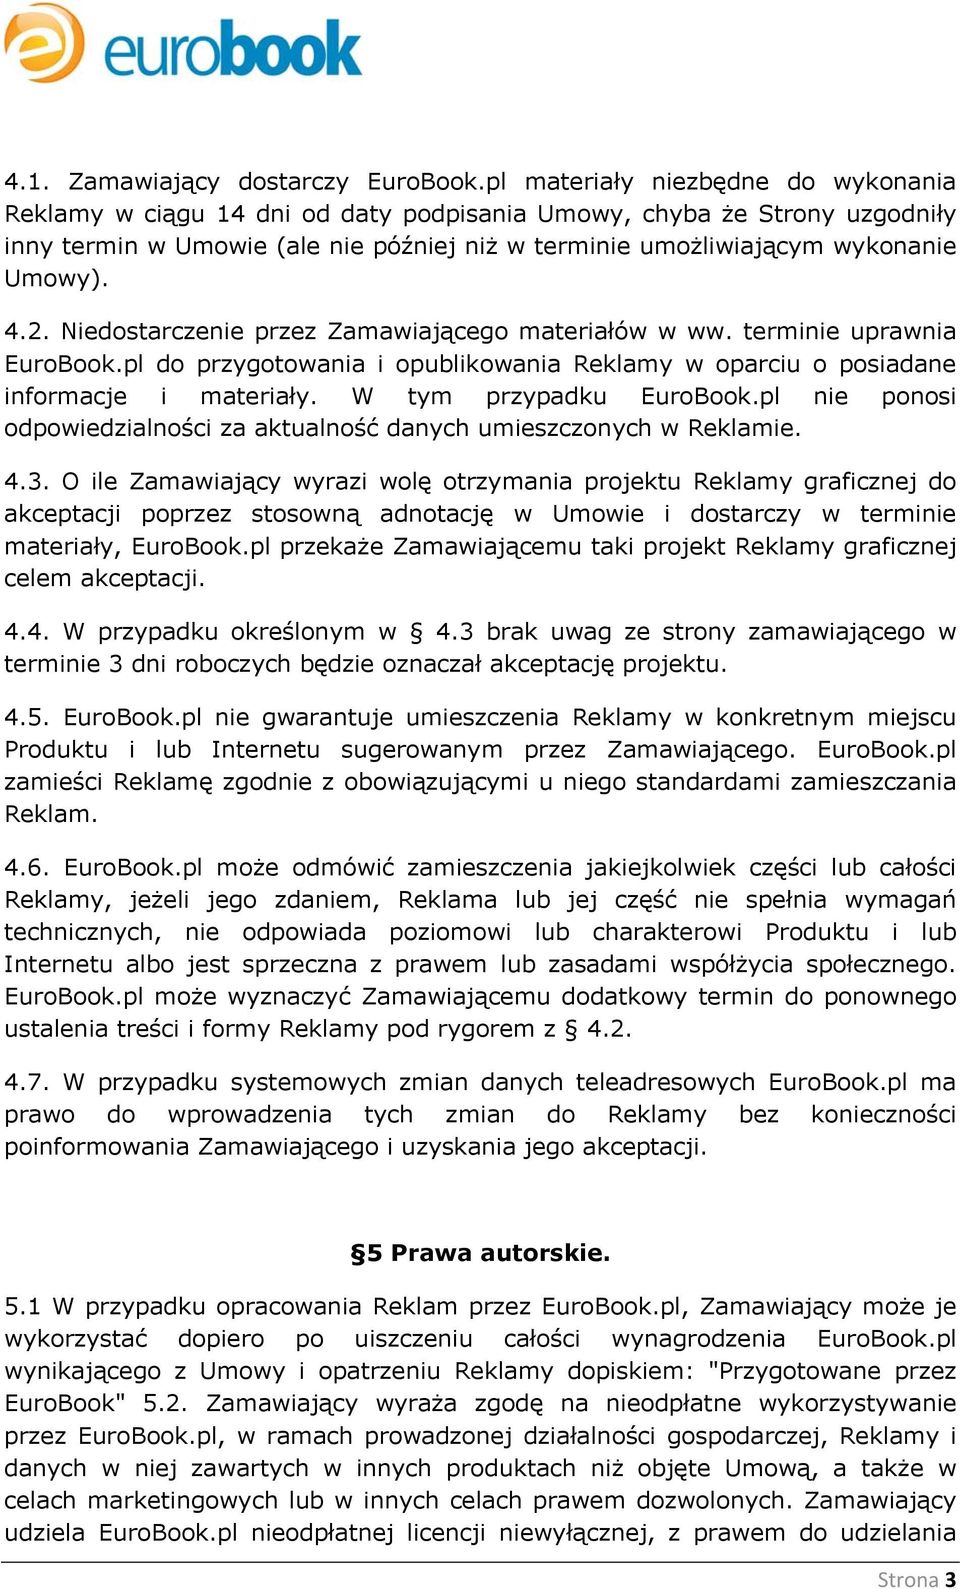 2. Niedostarczenie przez Zamawiającego materiałów w ww. terminie uprawnia EuroBook.pl do przygotowania i opublikowania Reklamy w oparciu o posiadane informacje i materiały. W tym przypadku EuroBook.